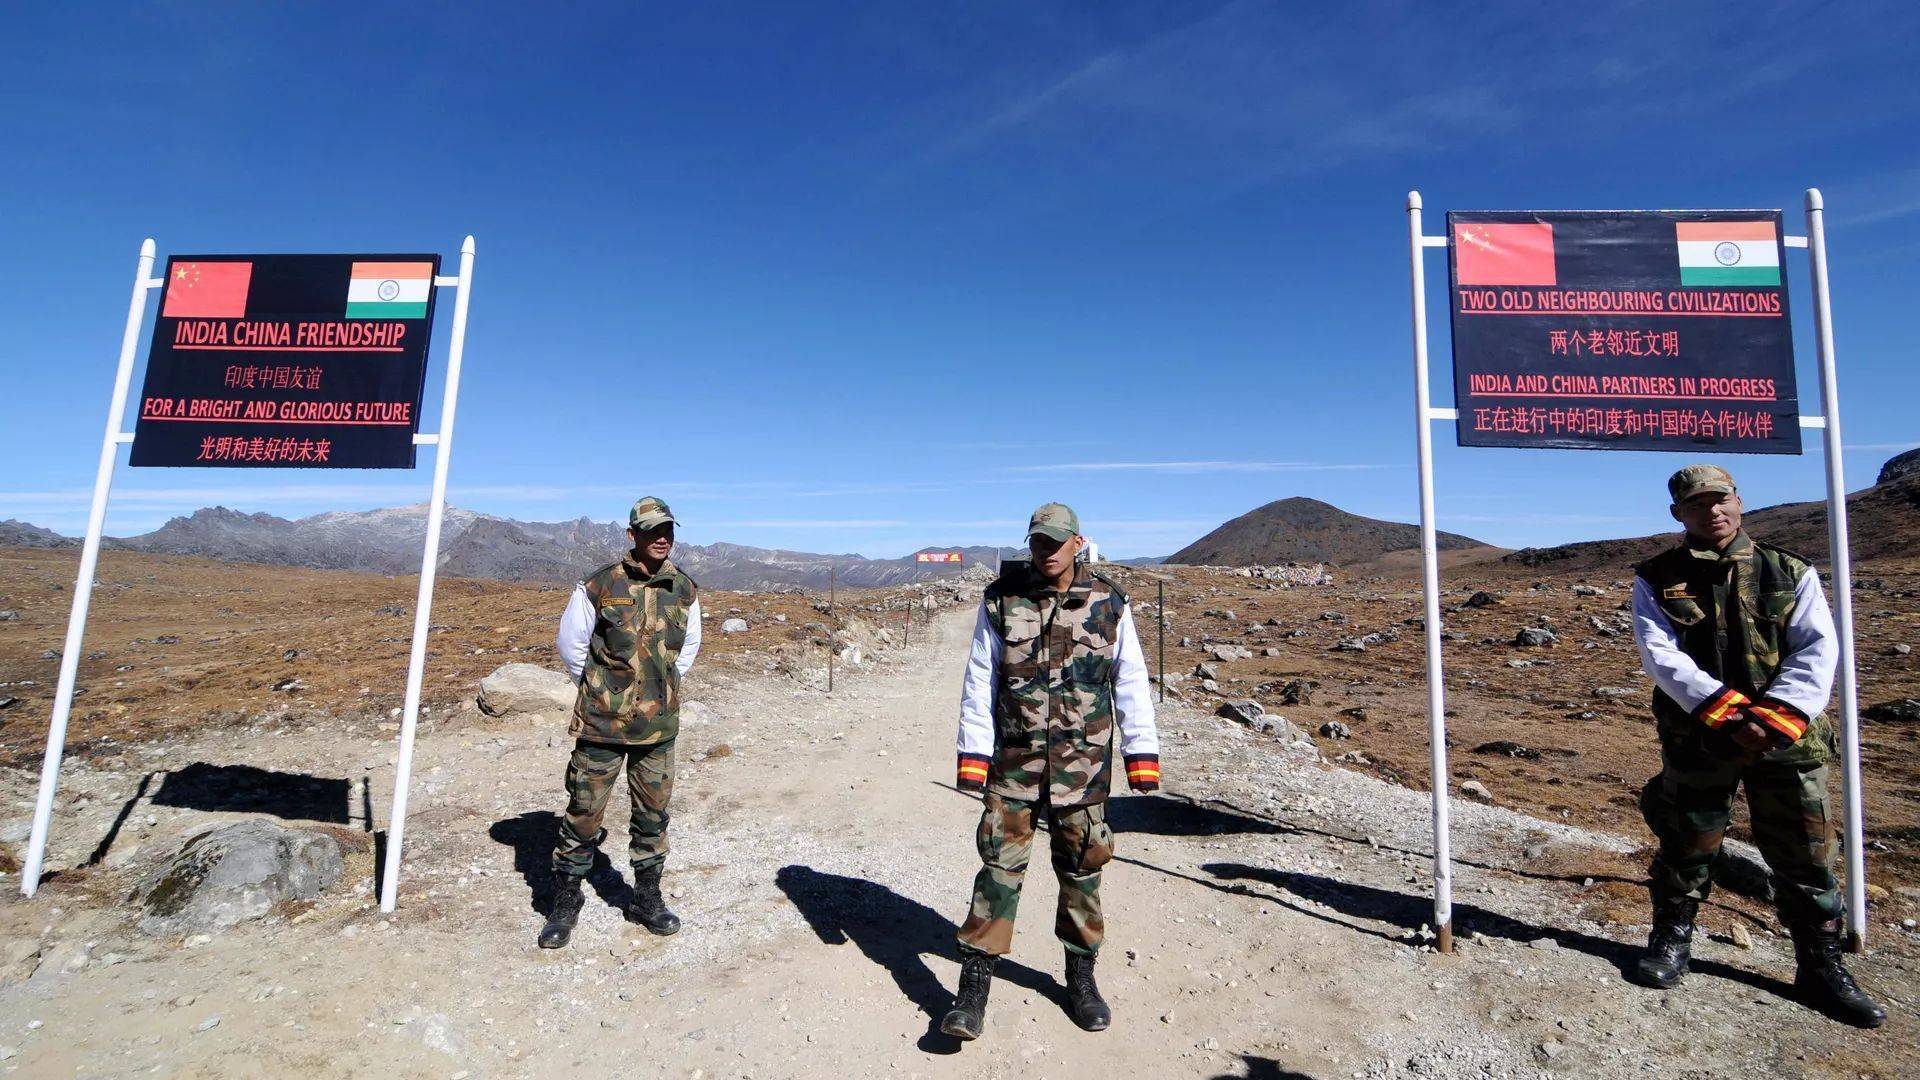 中印军队边境冲突,为何印度要频繁试探?